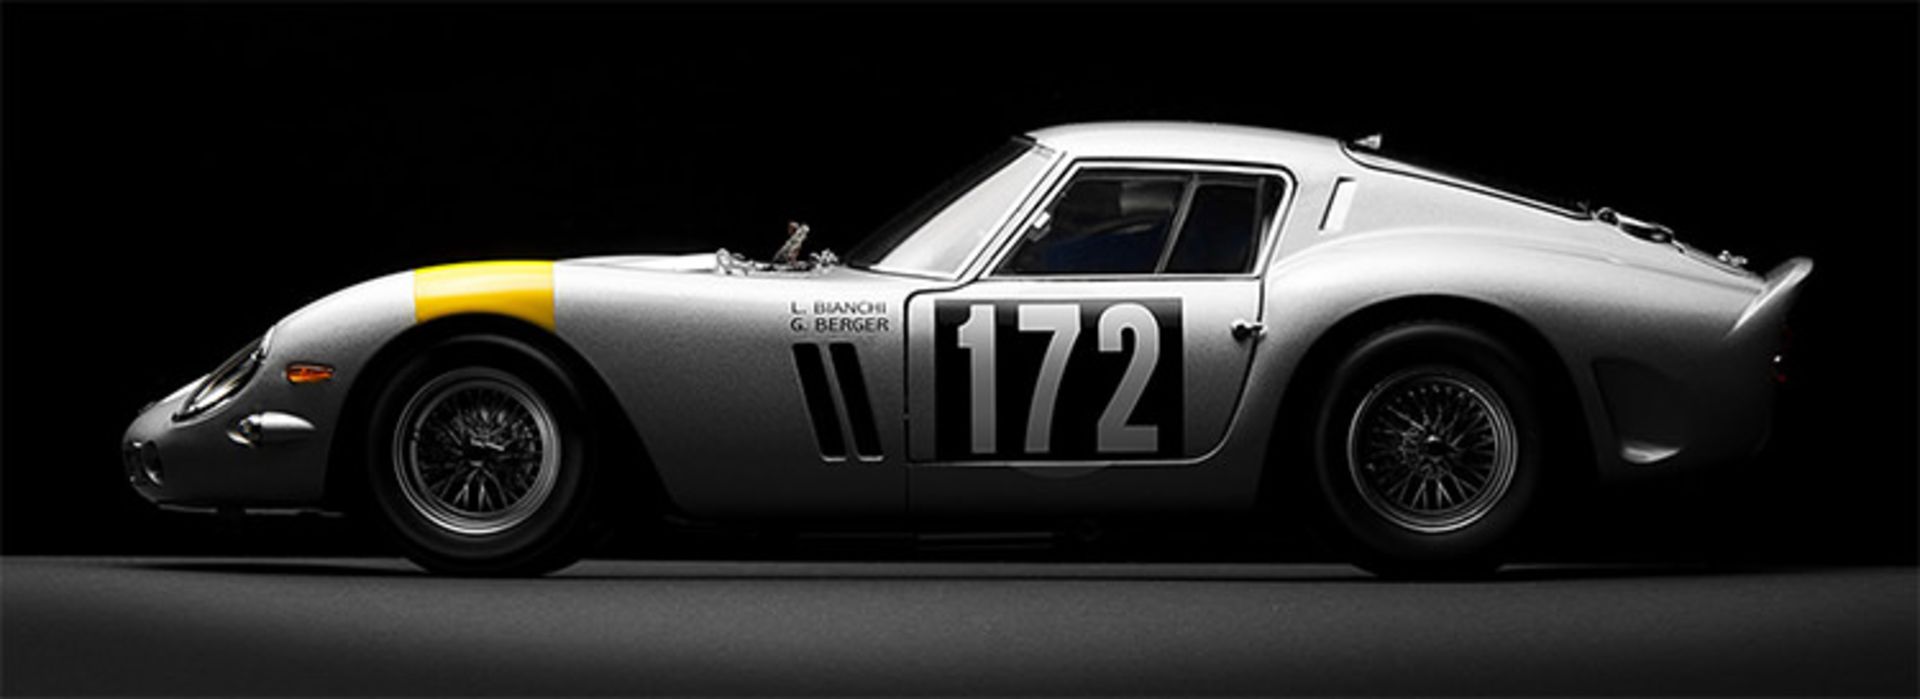 مرجع متخصصين ايران Ferrari 250 GTO / فراري 250 GTO